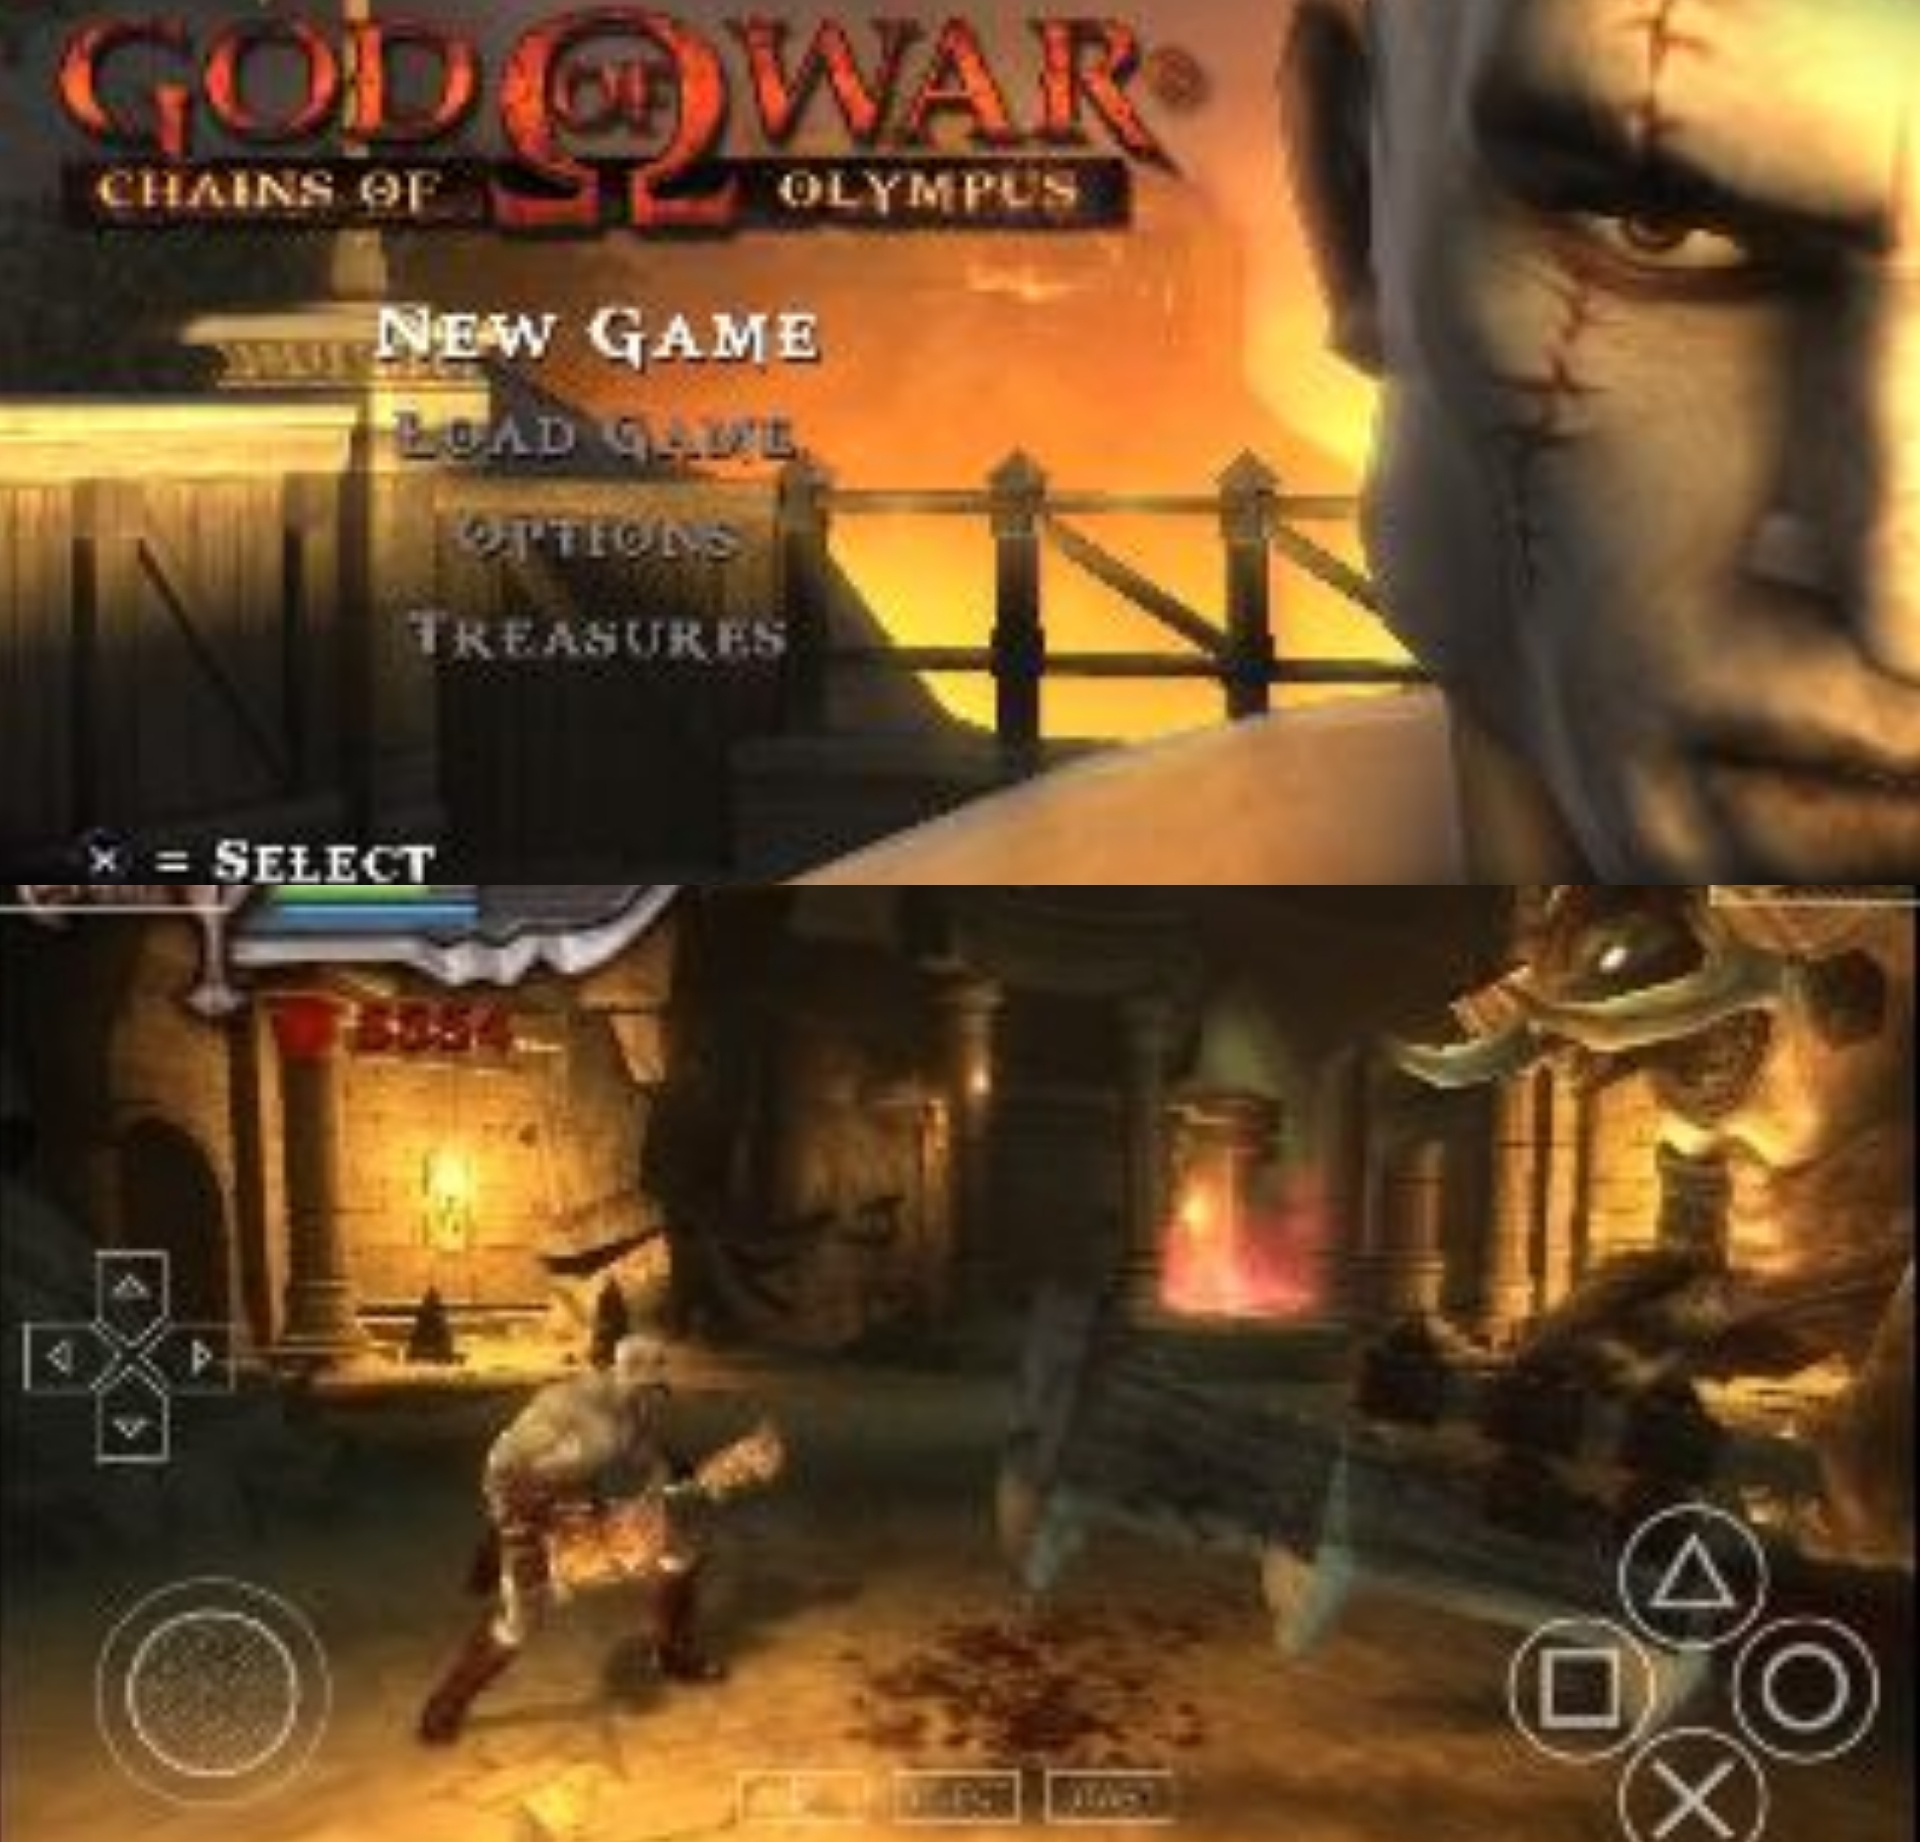 god of war 3 rar file download for pc